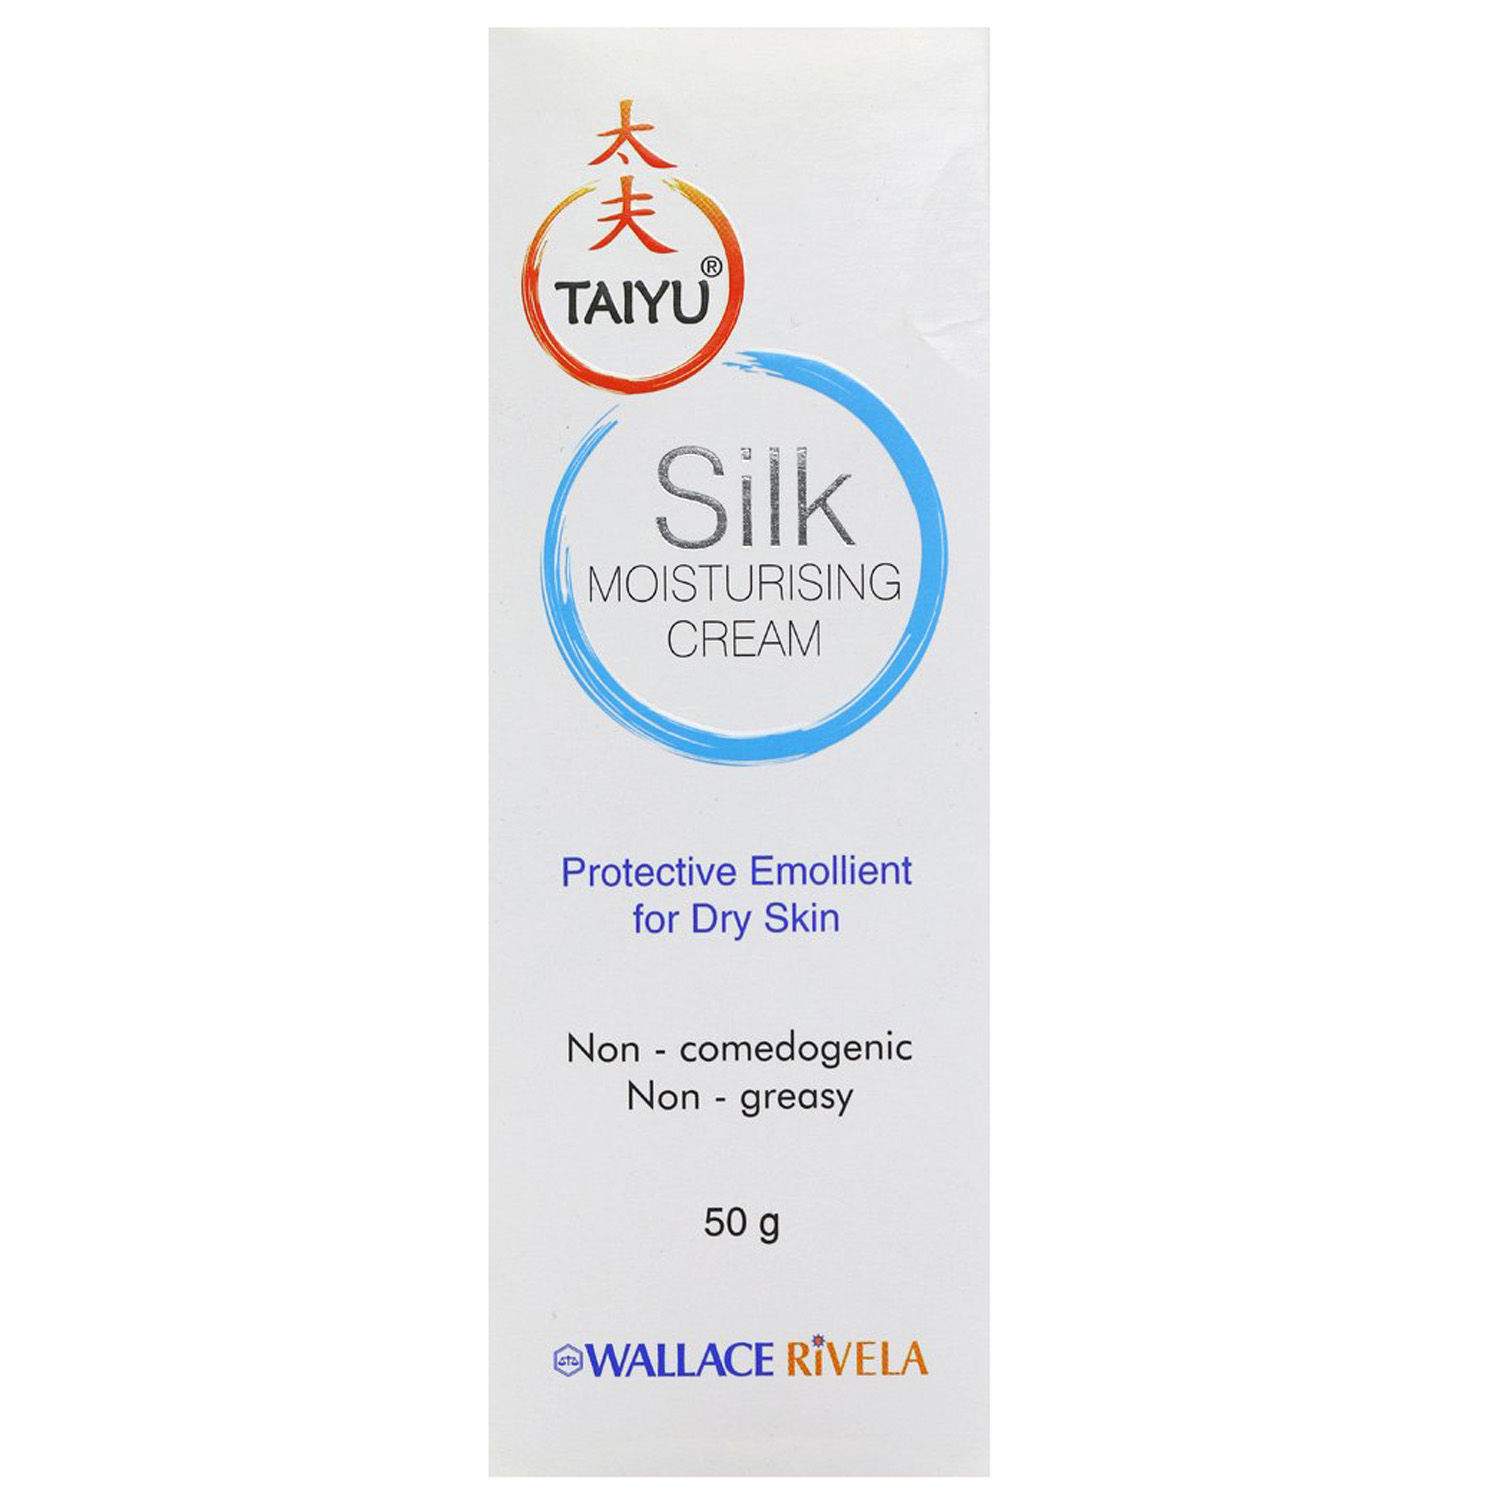 Taiyu Silk Moisturising Cream for Dry Skin, 50 gm, Pack of 1 